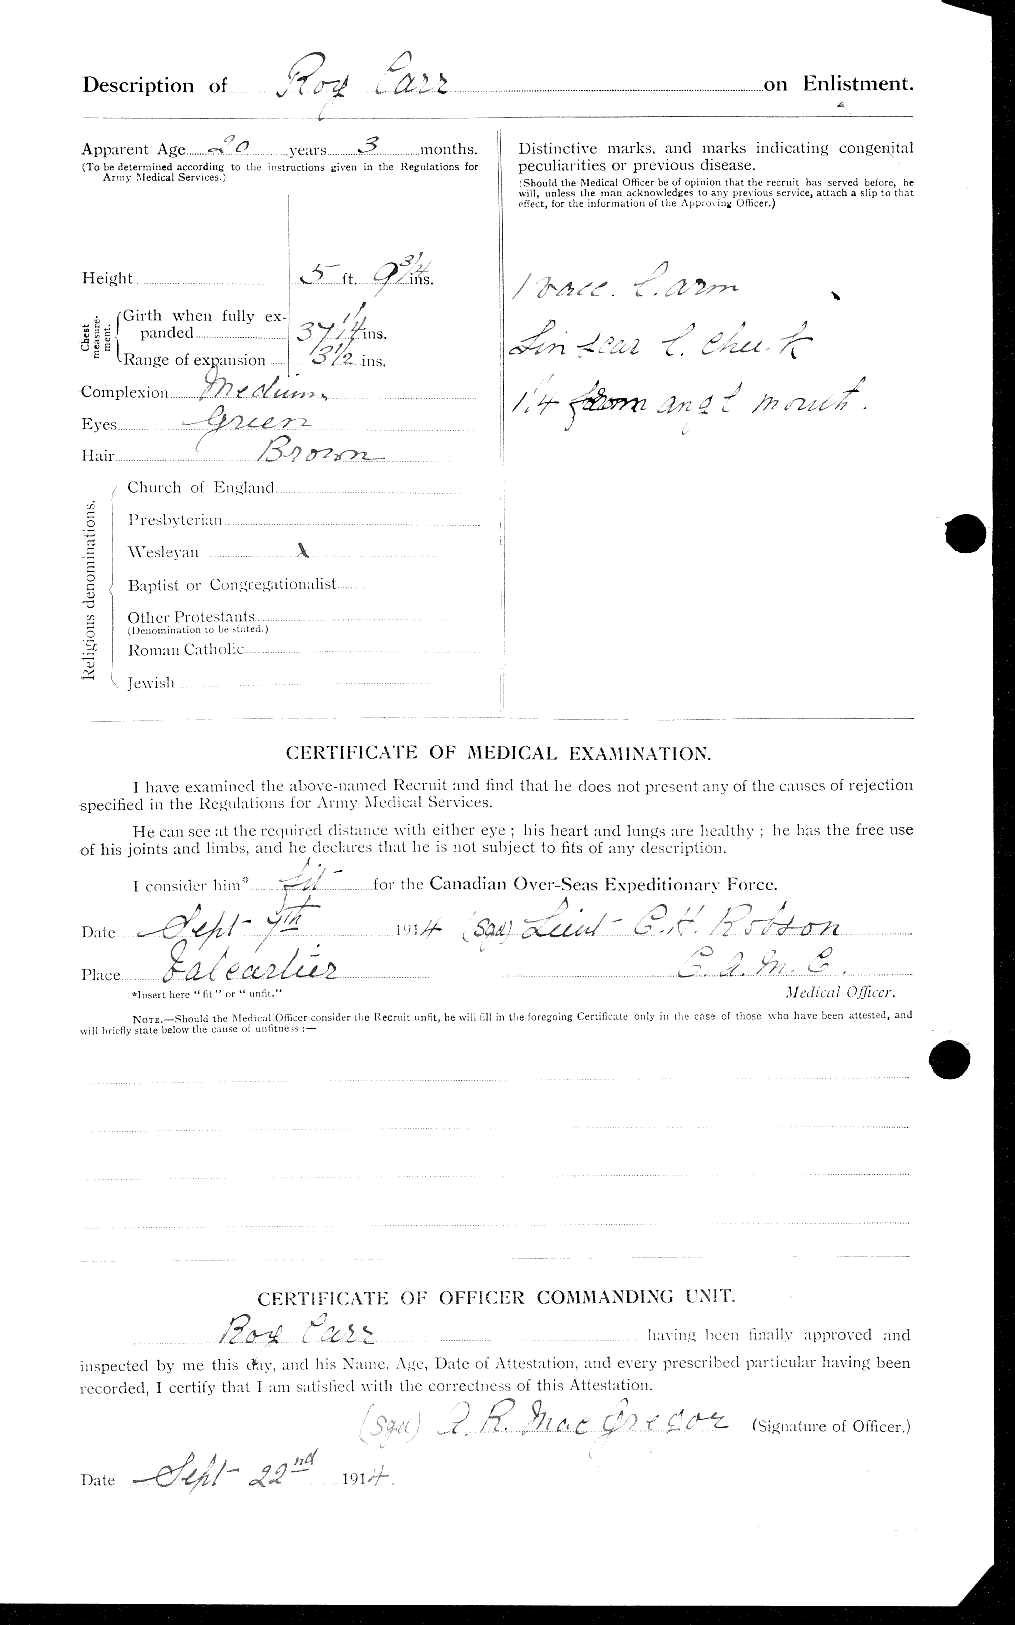 Dossiers du Personnel de la Première Guerre mondiale - CEC 010394b